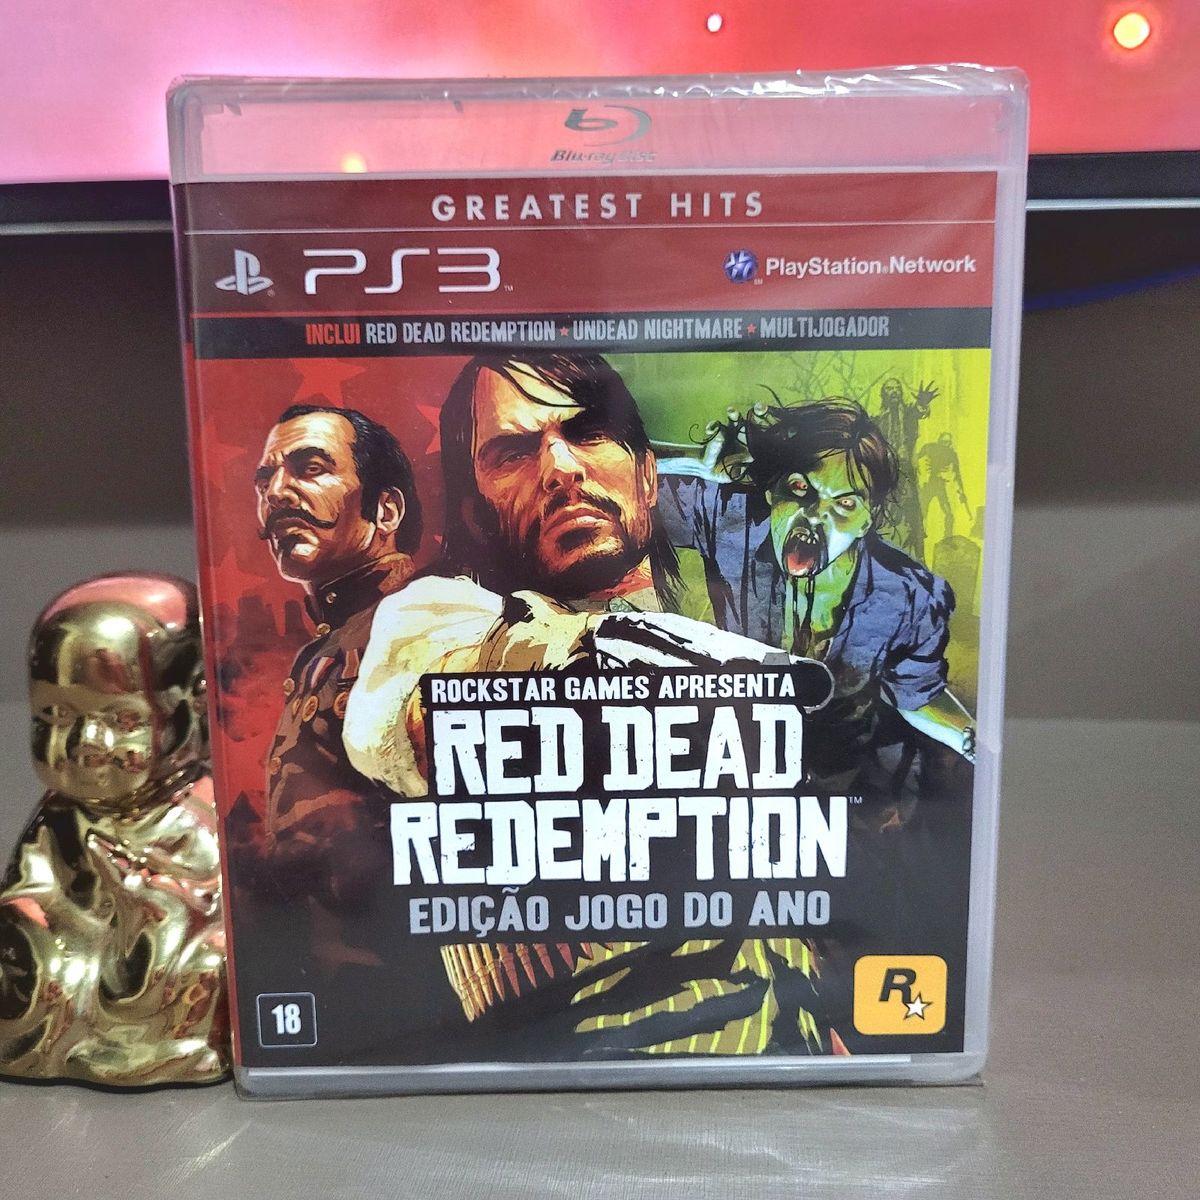 Red Dead Redemption Edição Jogo Do Ano Goty - PS3 em Promoção na Americanas